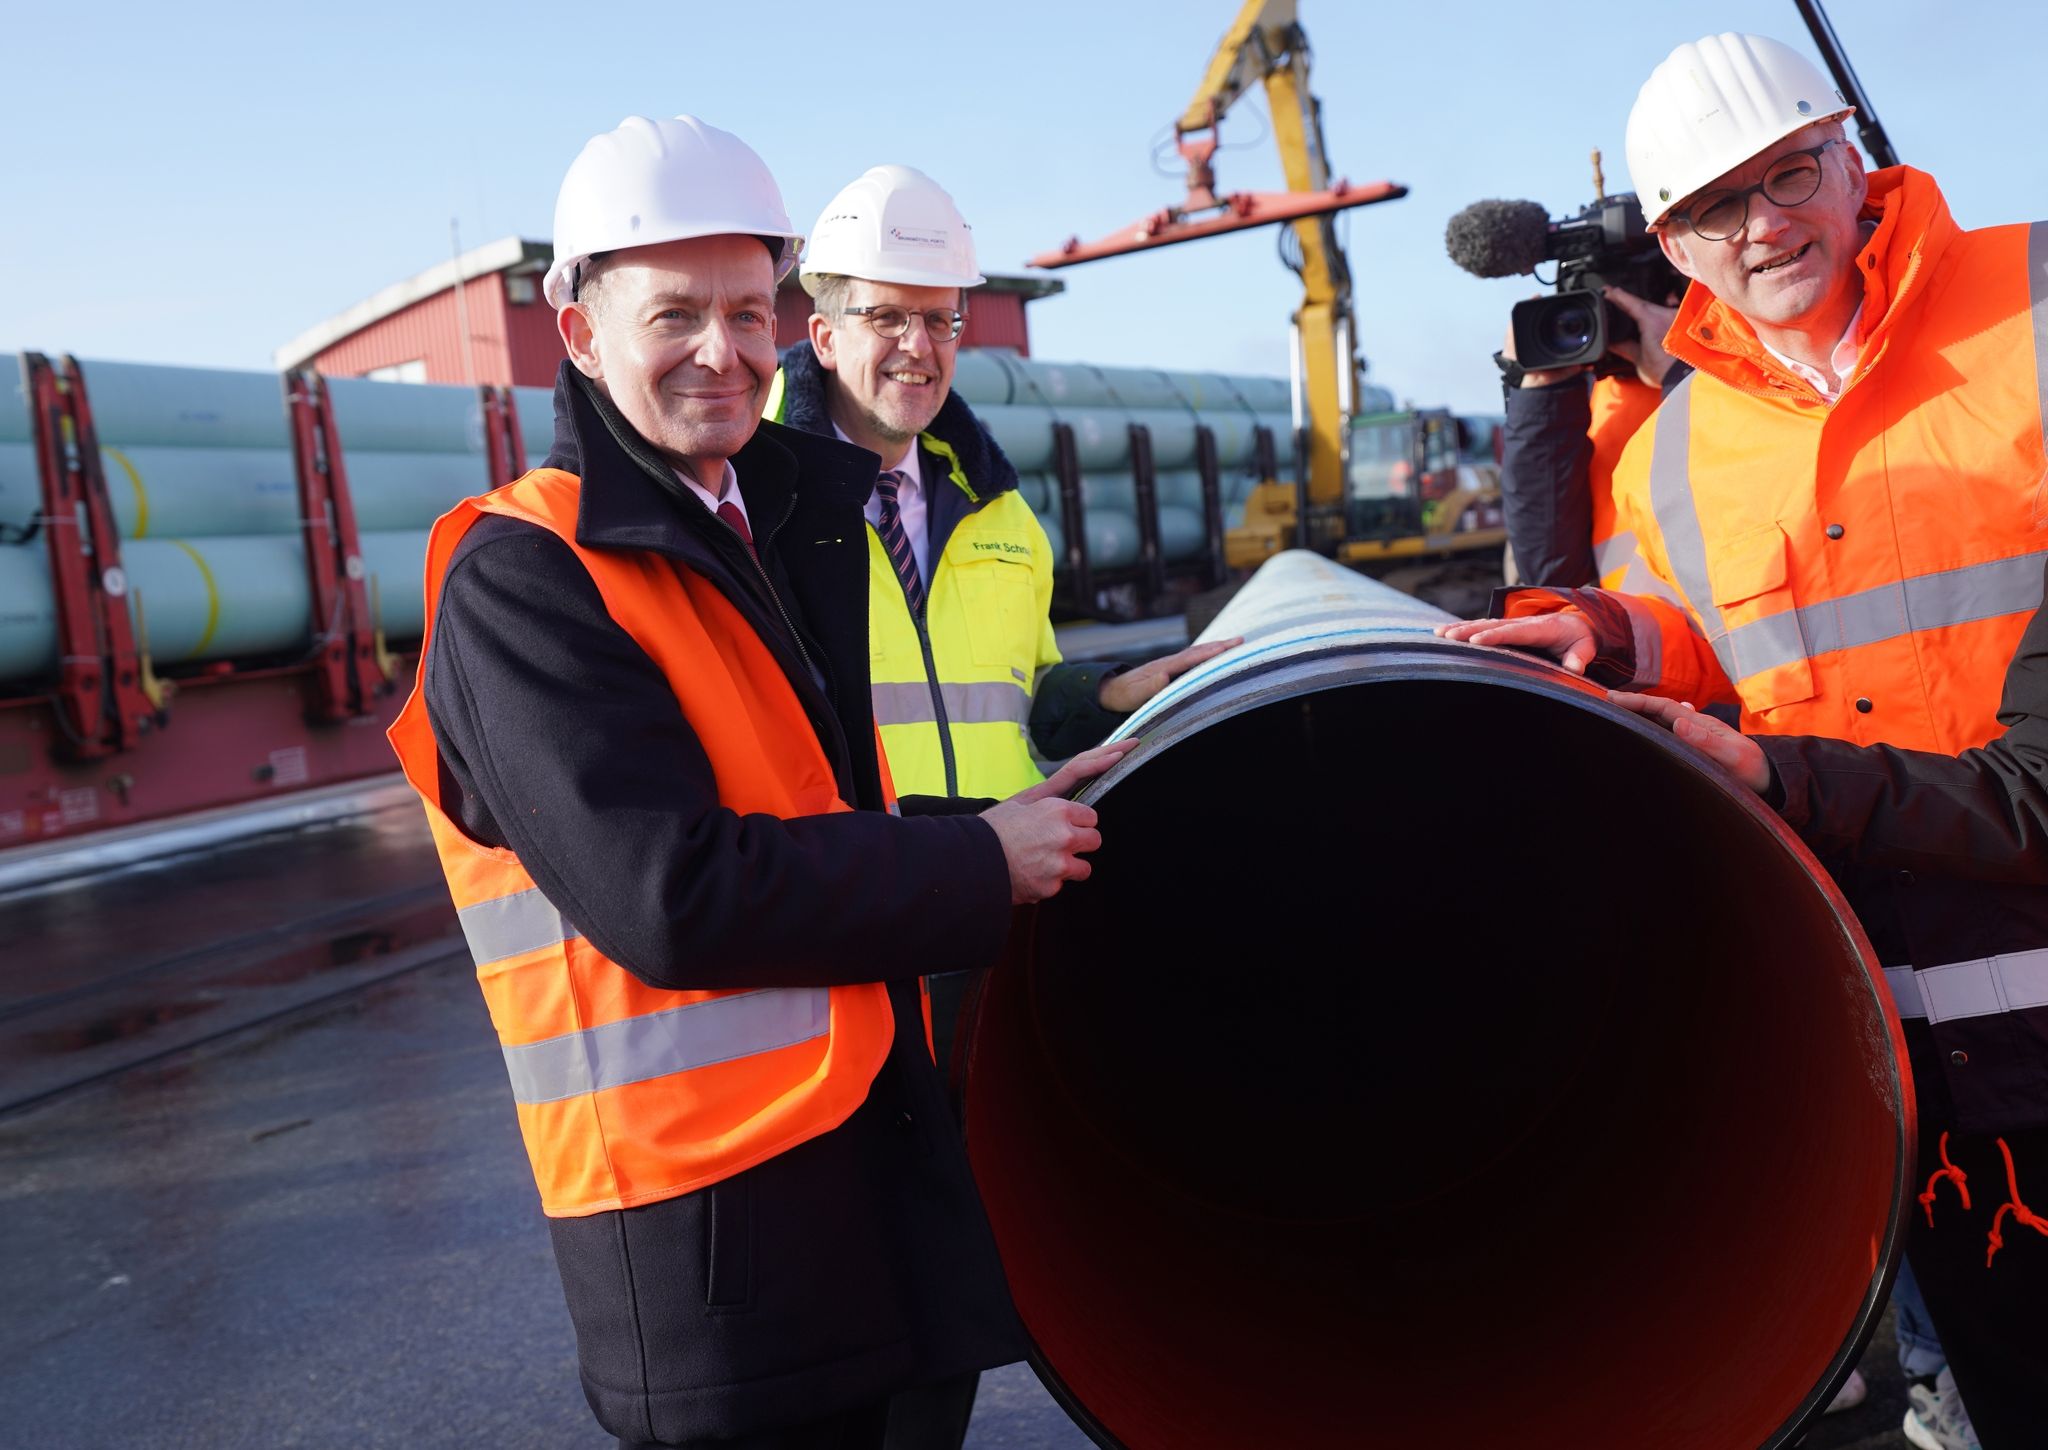 Bundesverkehrsminister Volker Wissing (l) bei einem Pressetermin zum Bau der neuen LNG-Pipeline in Brunsbüttel. An der Pipeline wurden nun Löcher gefunden - die Ermittlungen laufen.